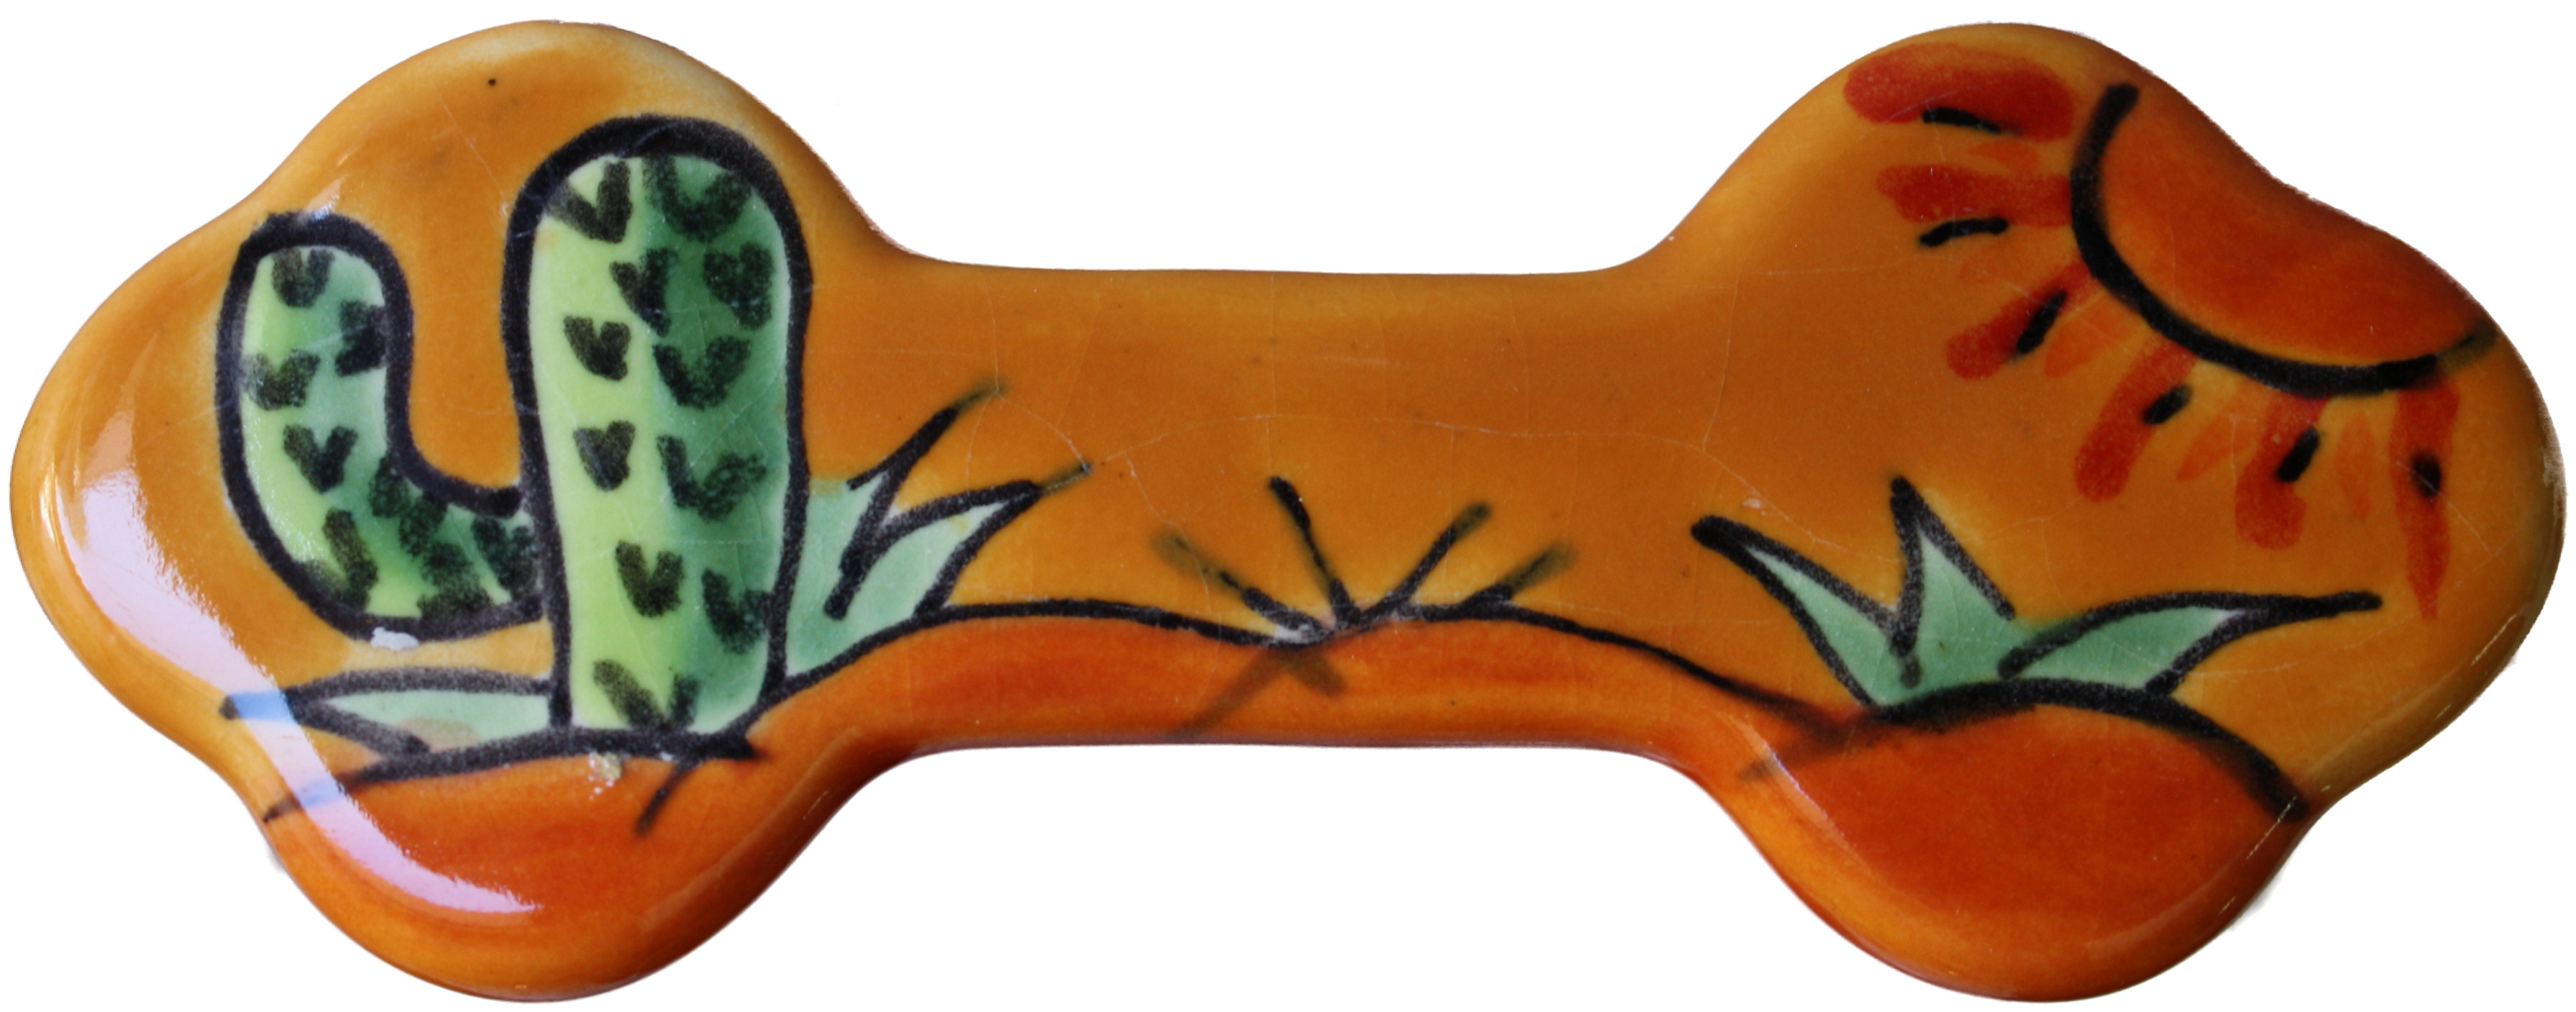 TalaMex Desert Talavera Ceramic Drawer Pull